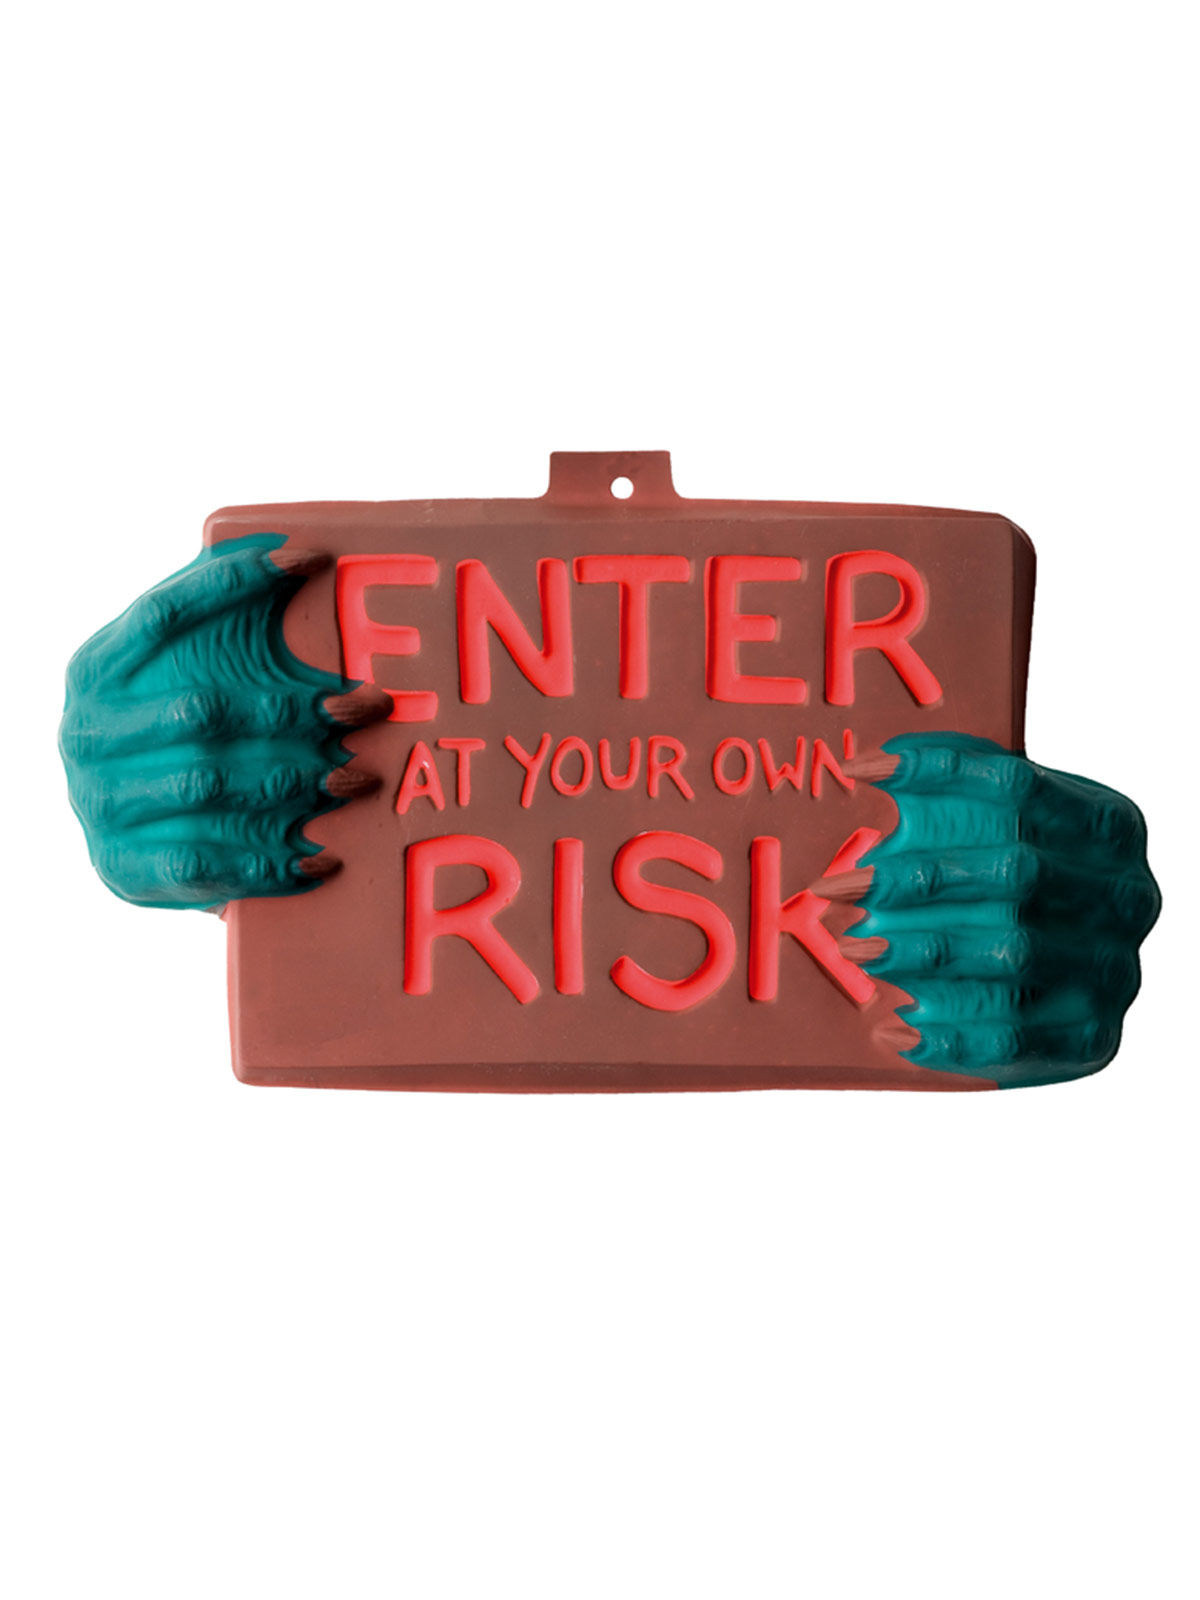 Monster-Schild Enter At Your Own Risk Halloween Party-Deko grün-braun-rot 22x40cm